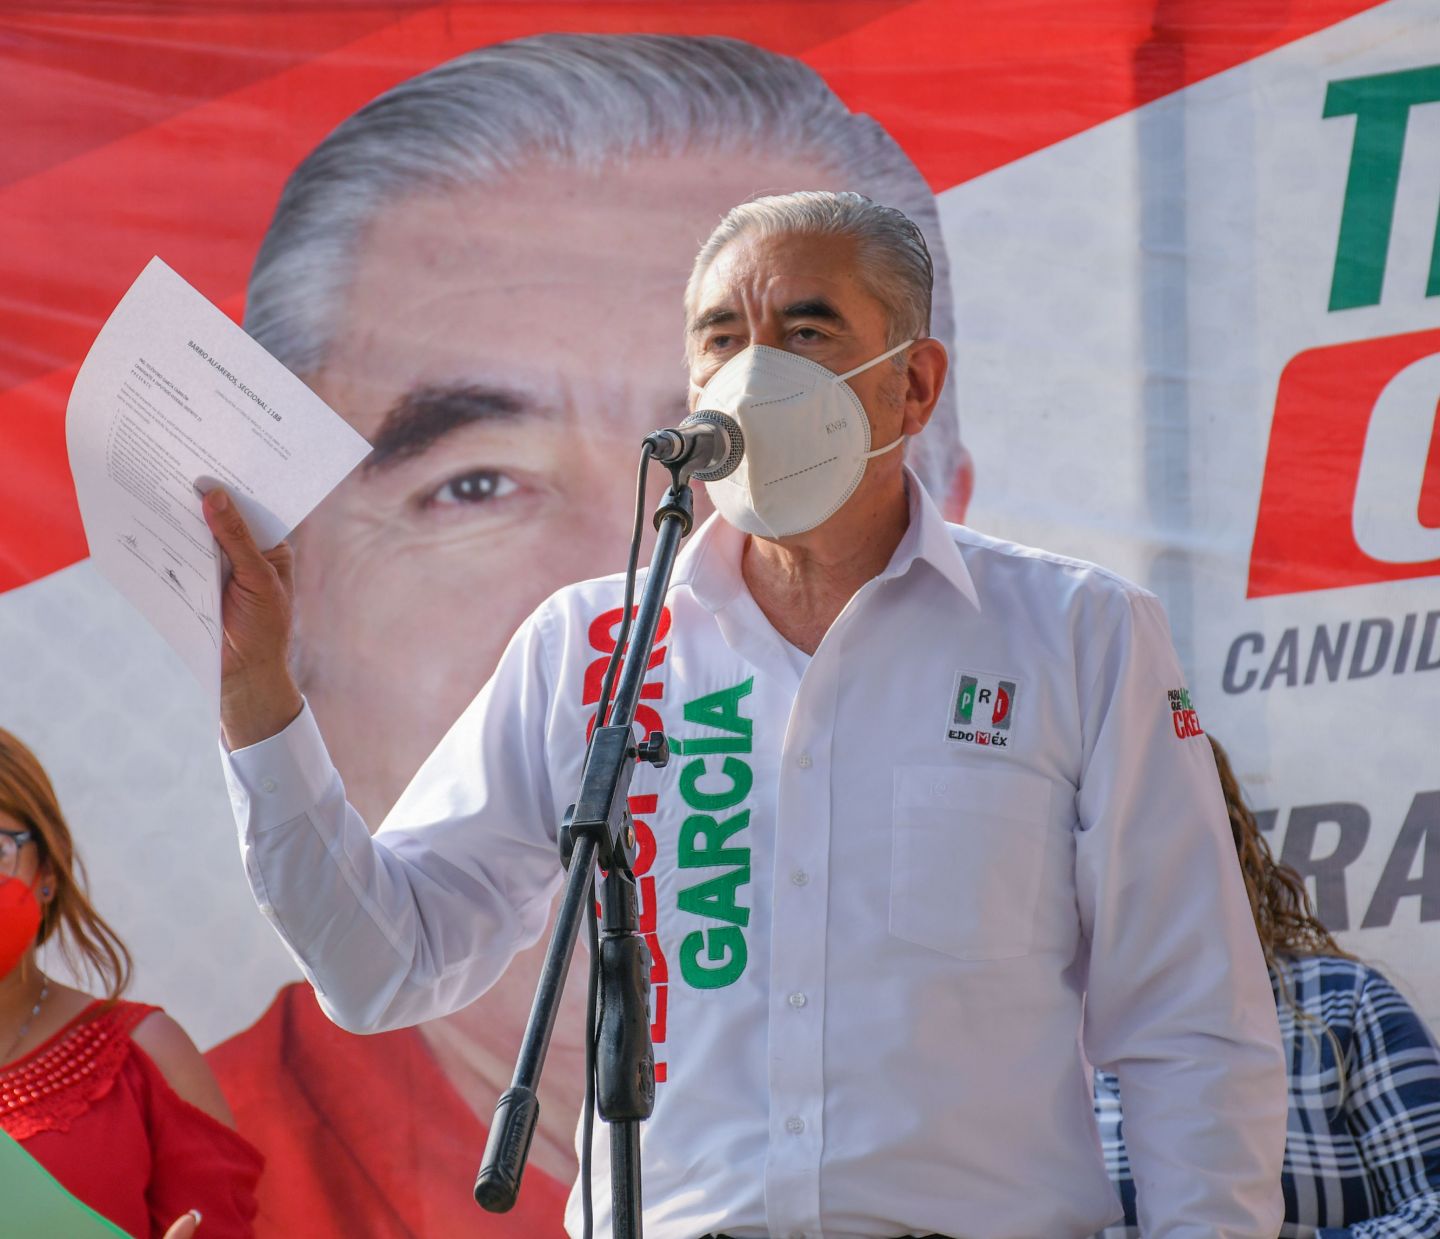 #El candidato a diputado federal Teléforo García Carreón impulsara la masificación  del deporte 